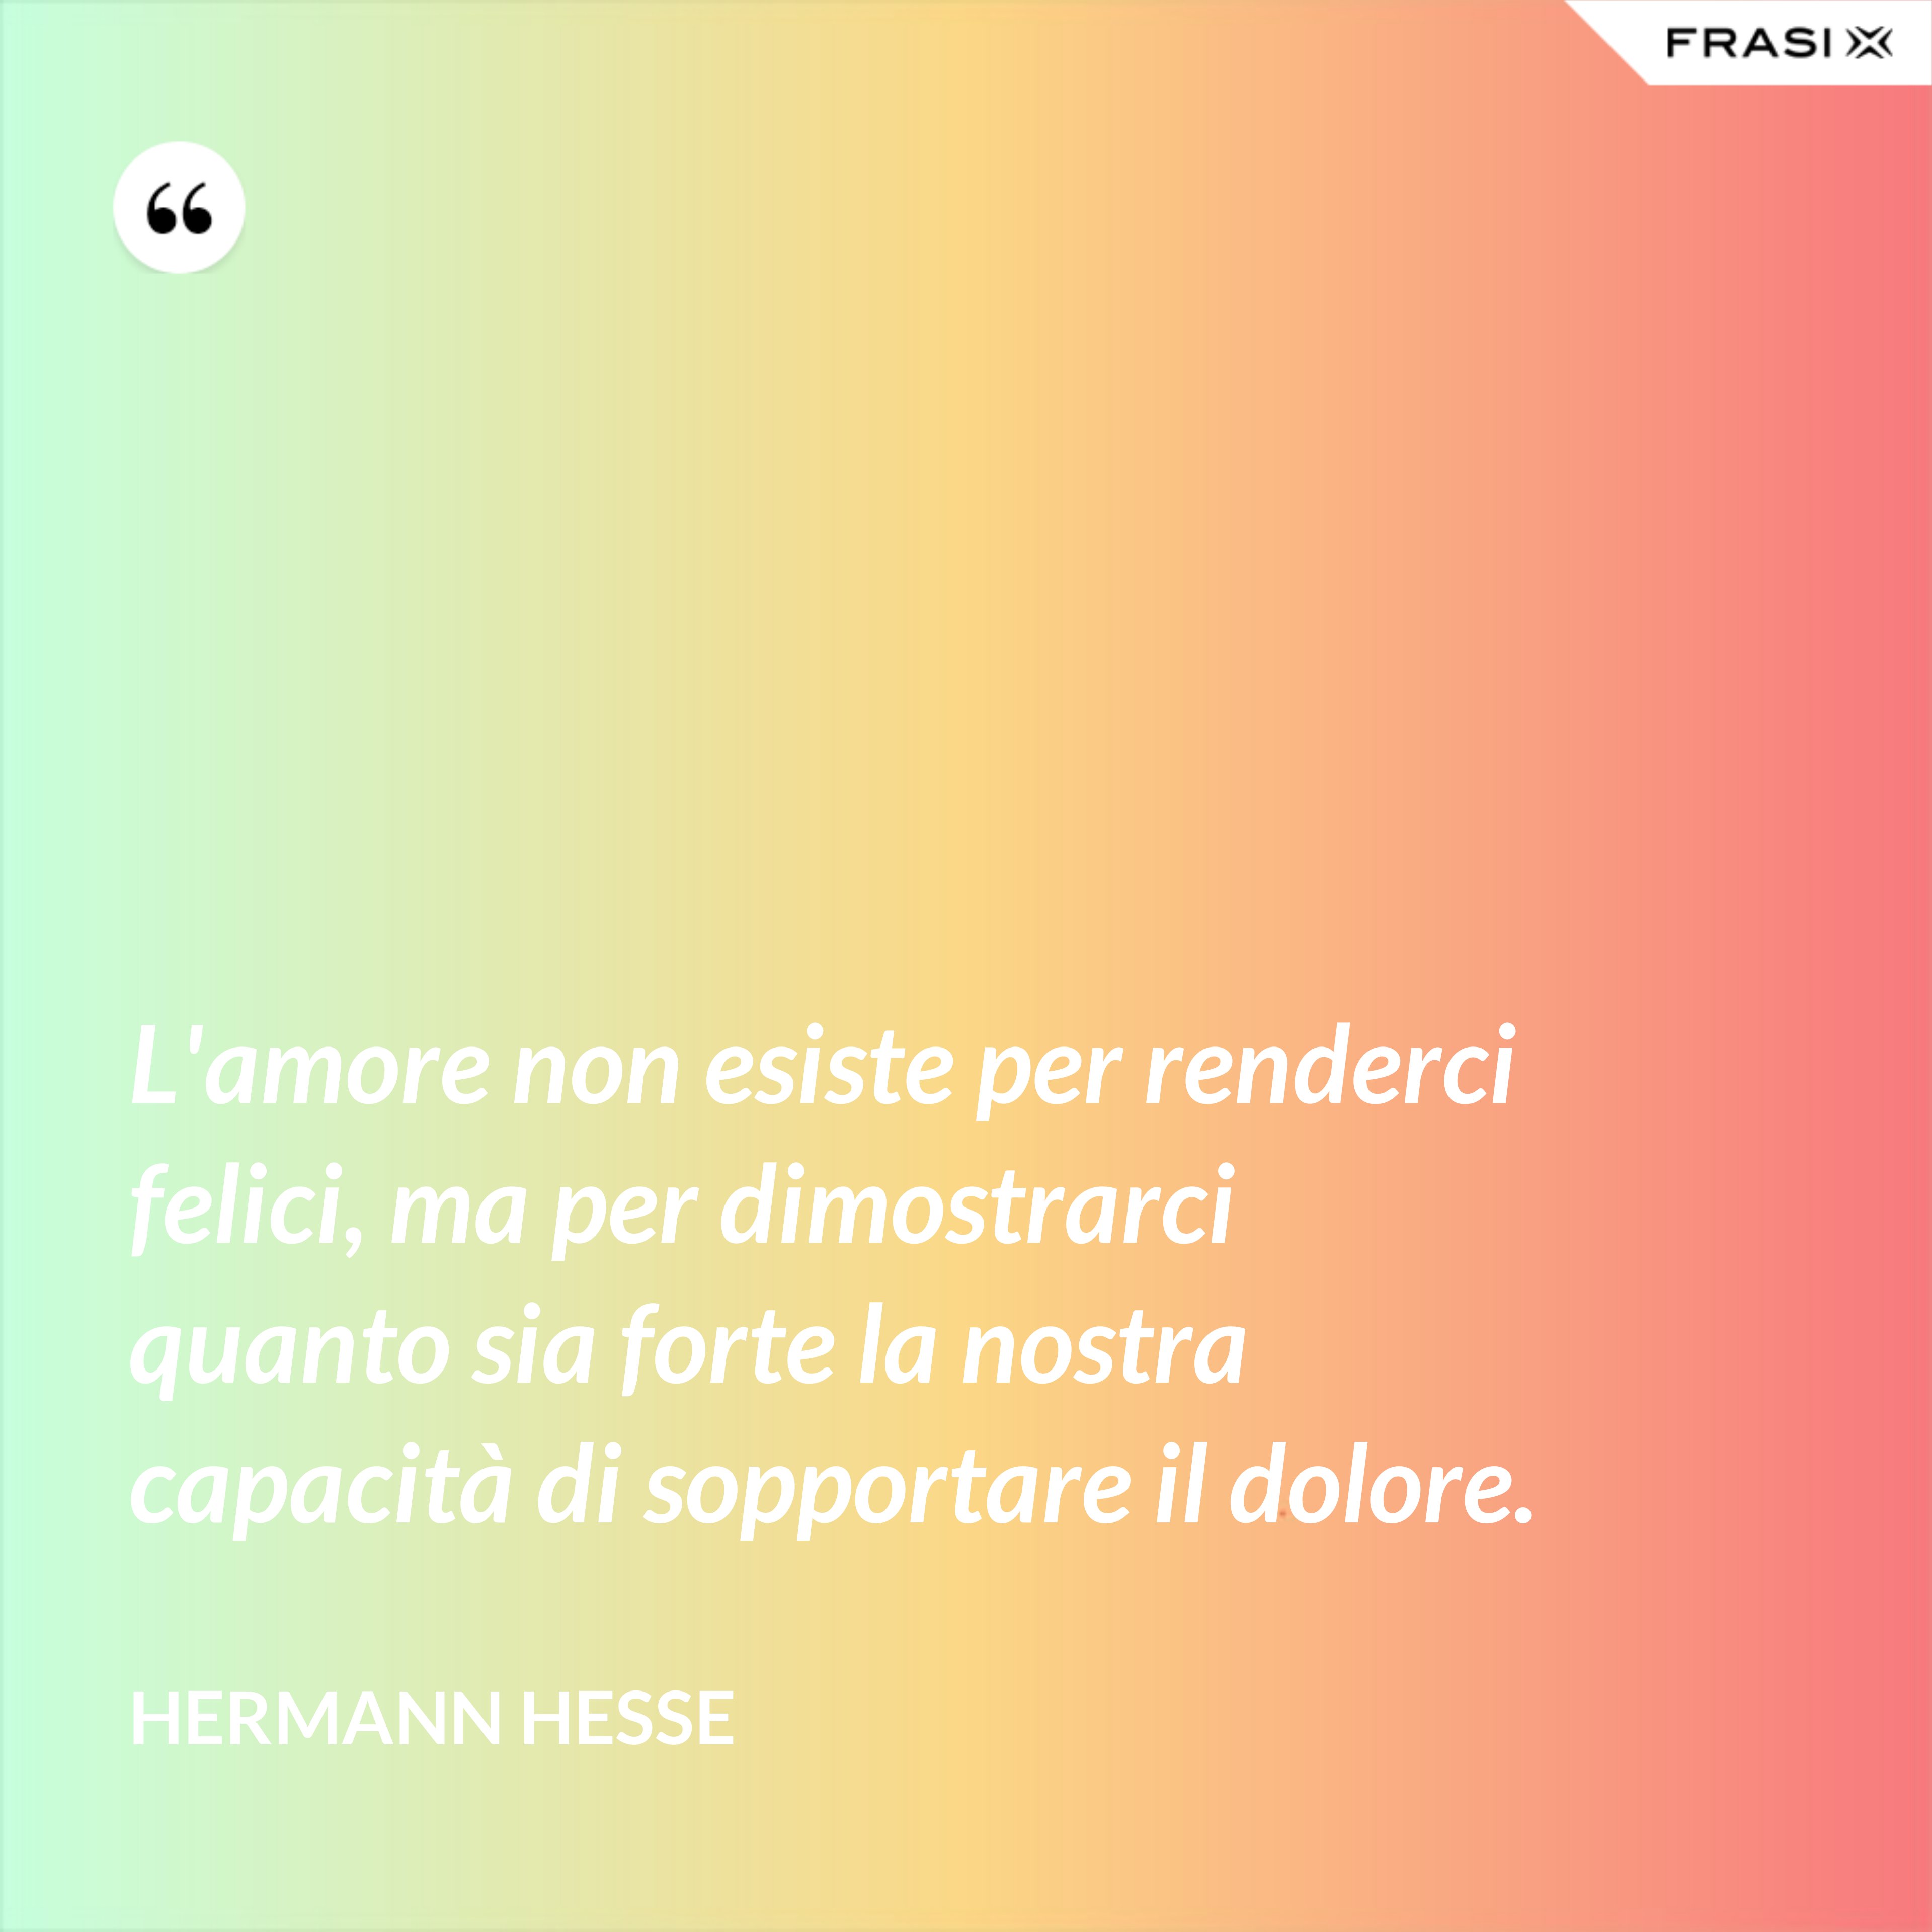 L'amore non esiste per renderci felici, ma per dimostrarci quanto sia forte la nostra capacità di sopportare il dolore. - Hermann Hesse